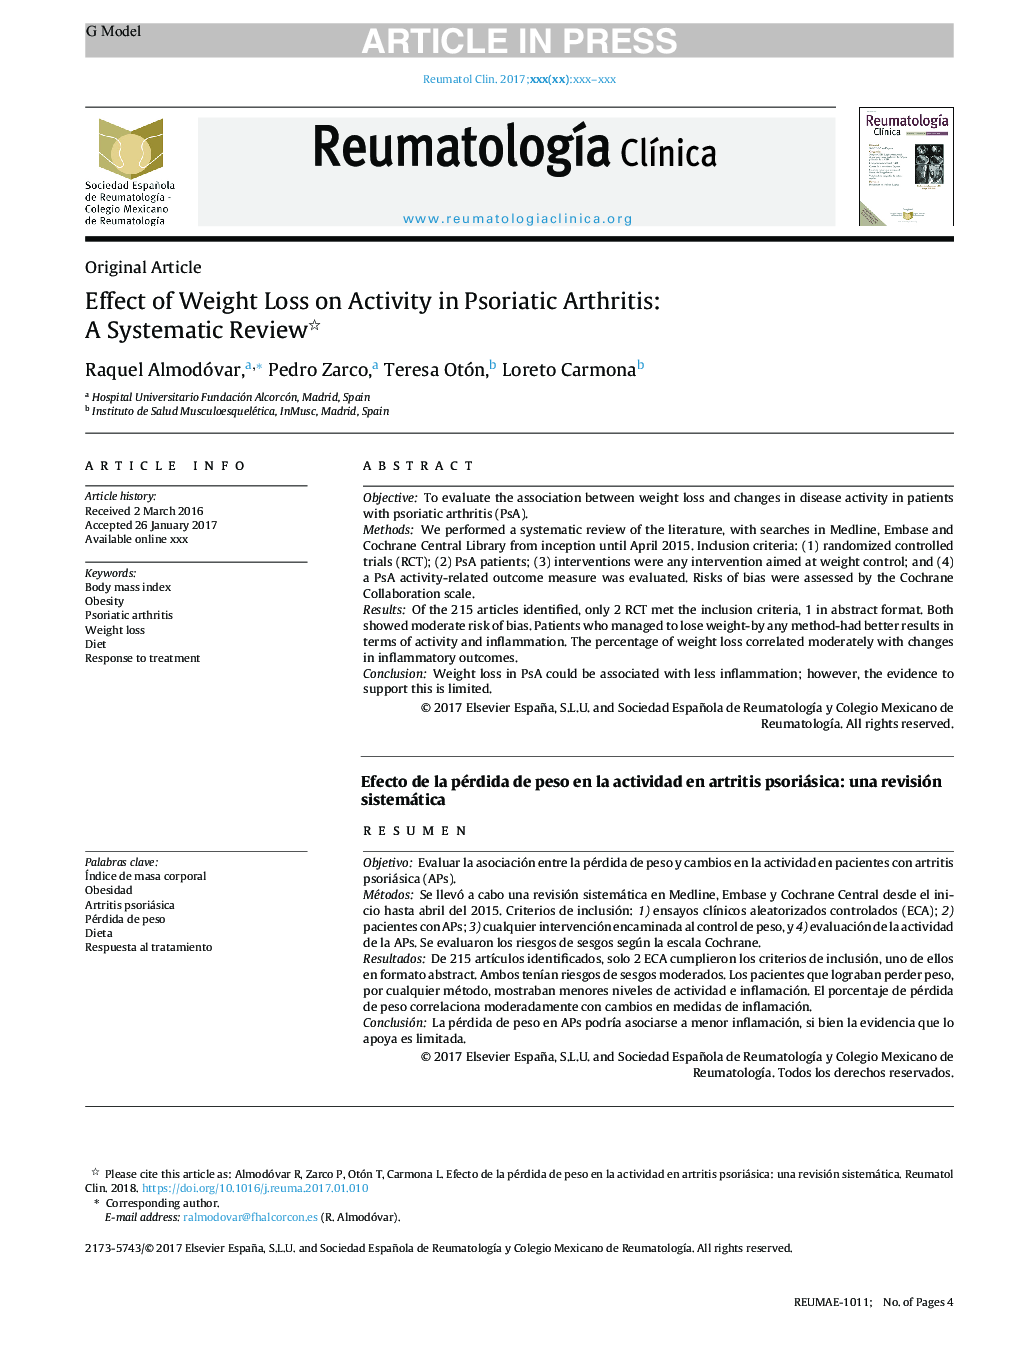 اثر کاهش وزن در فعالیت در آرتریت پسوریازیس: یک بررسی سیستماتیک 